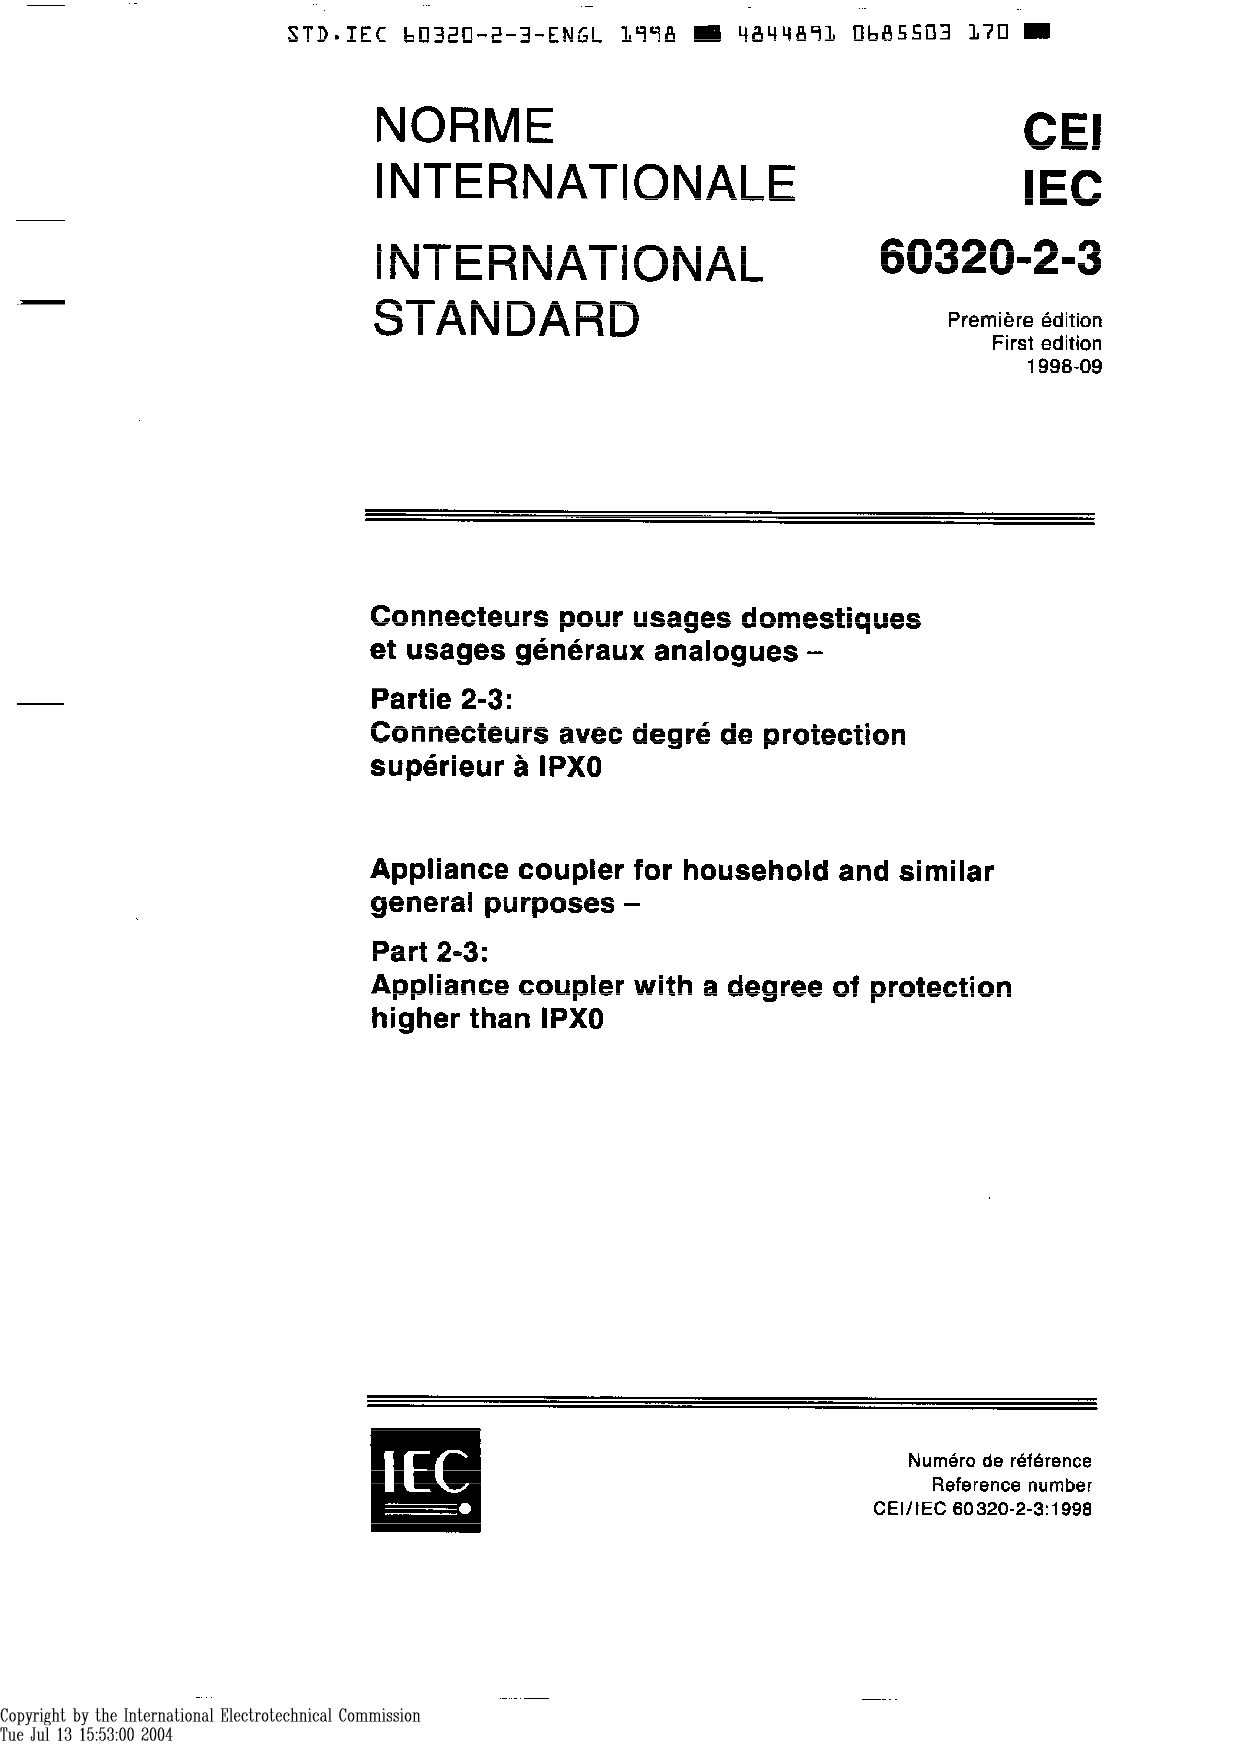 IEC 60320-2-3:1998